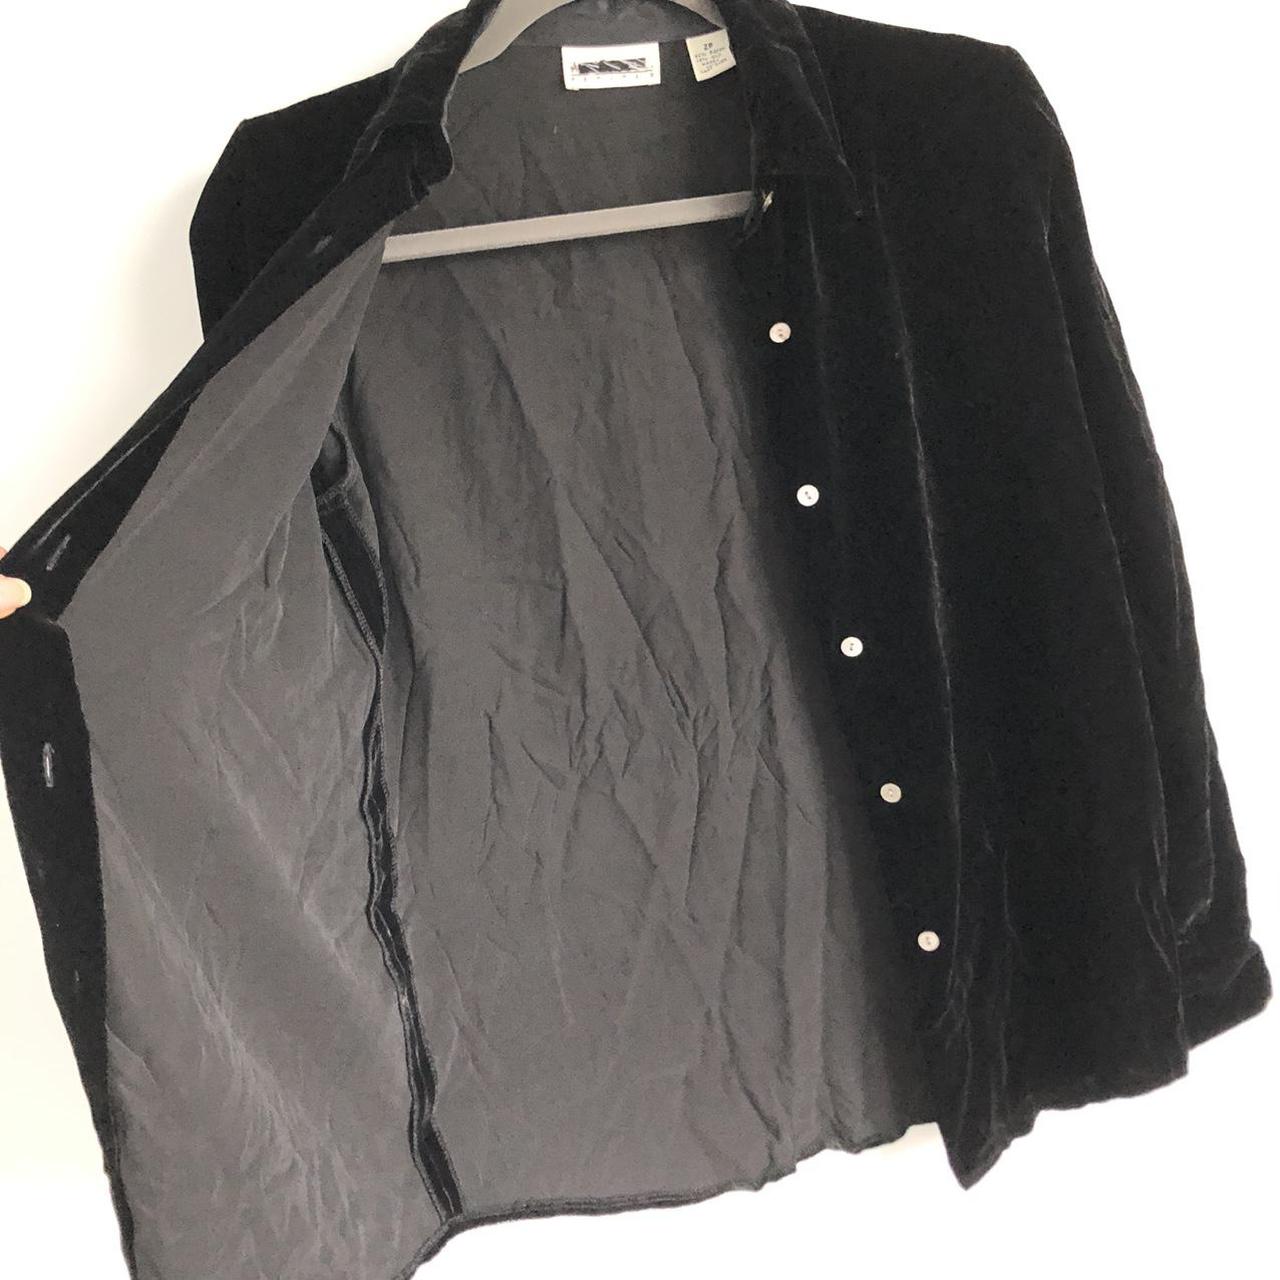 Product Image 2 - Black velvet long sleeve blouse.